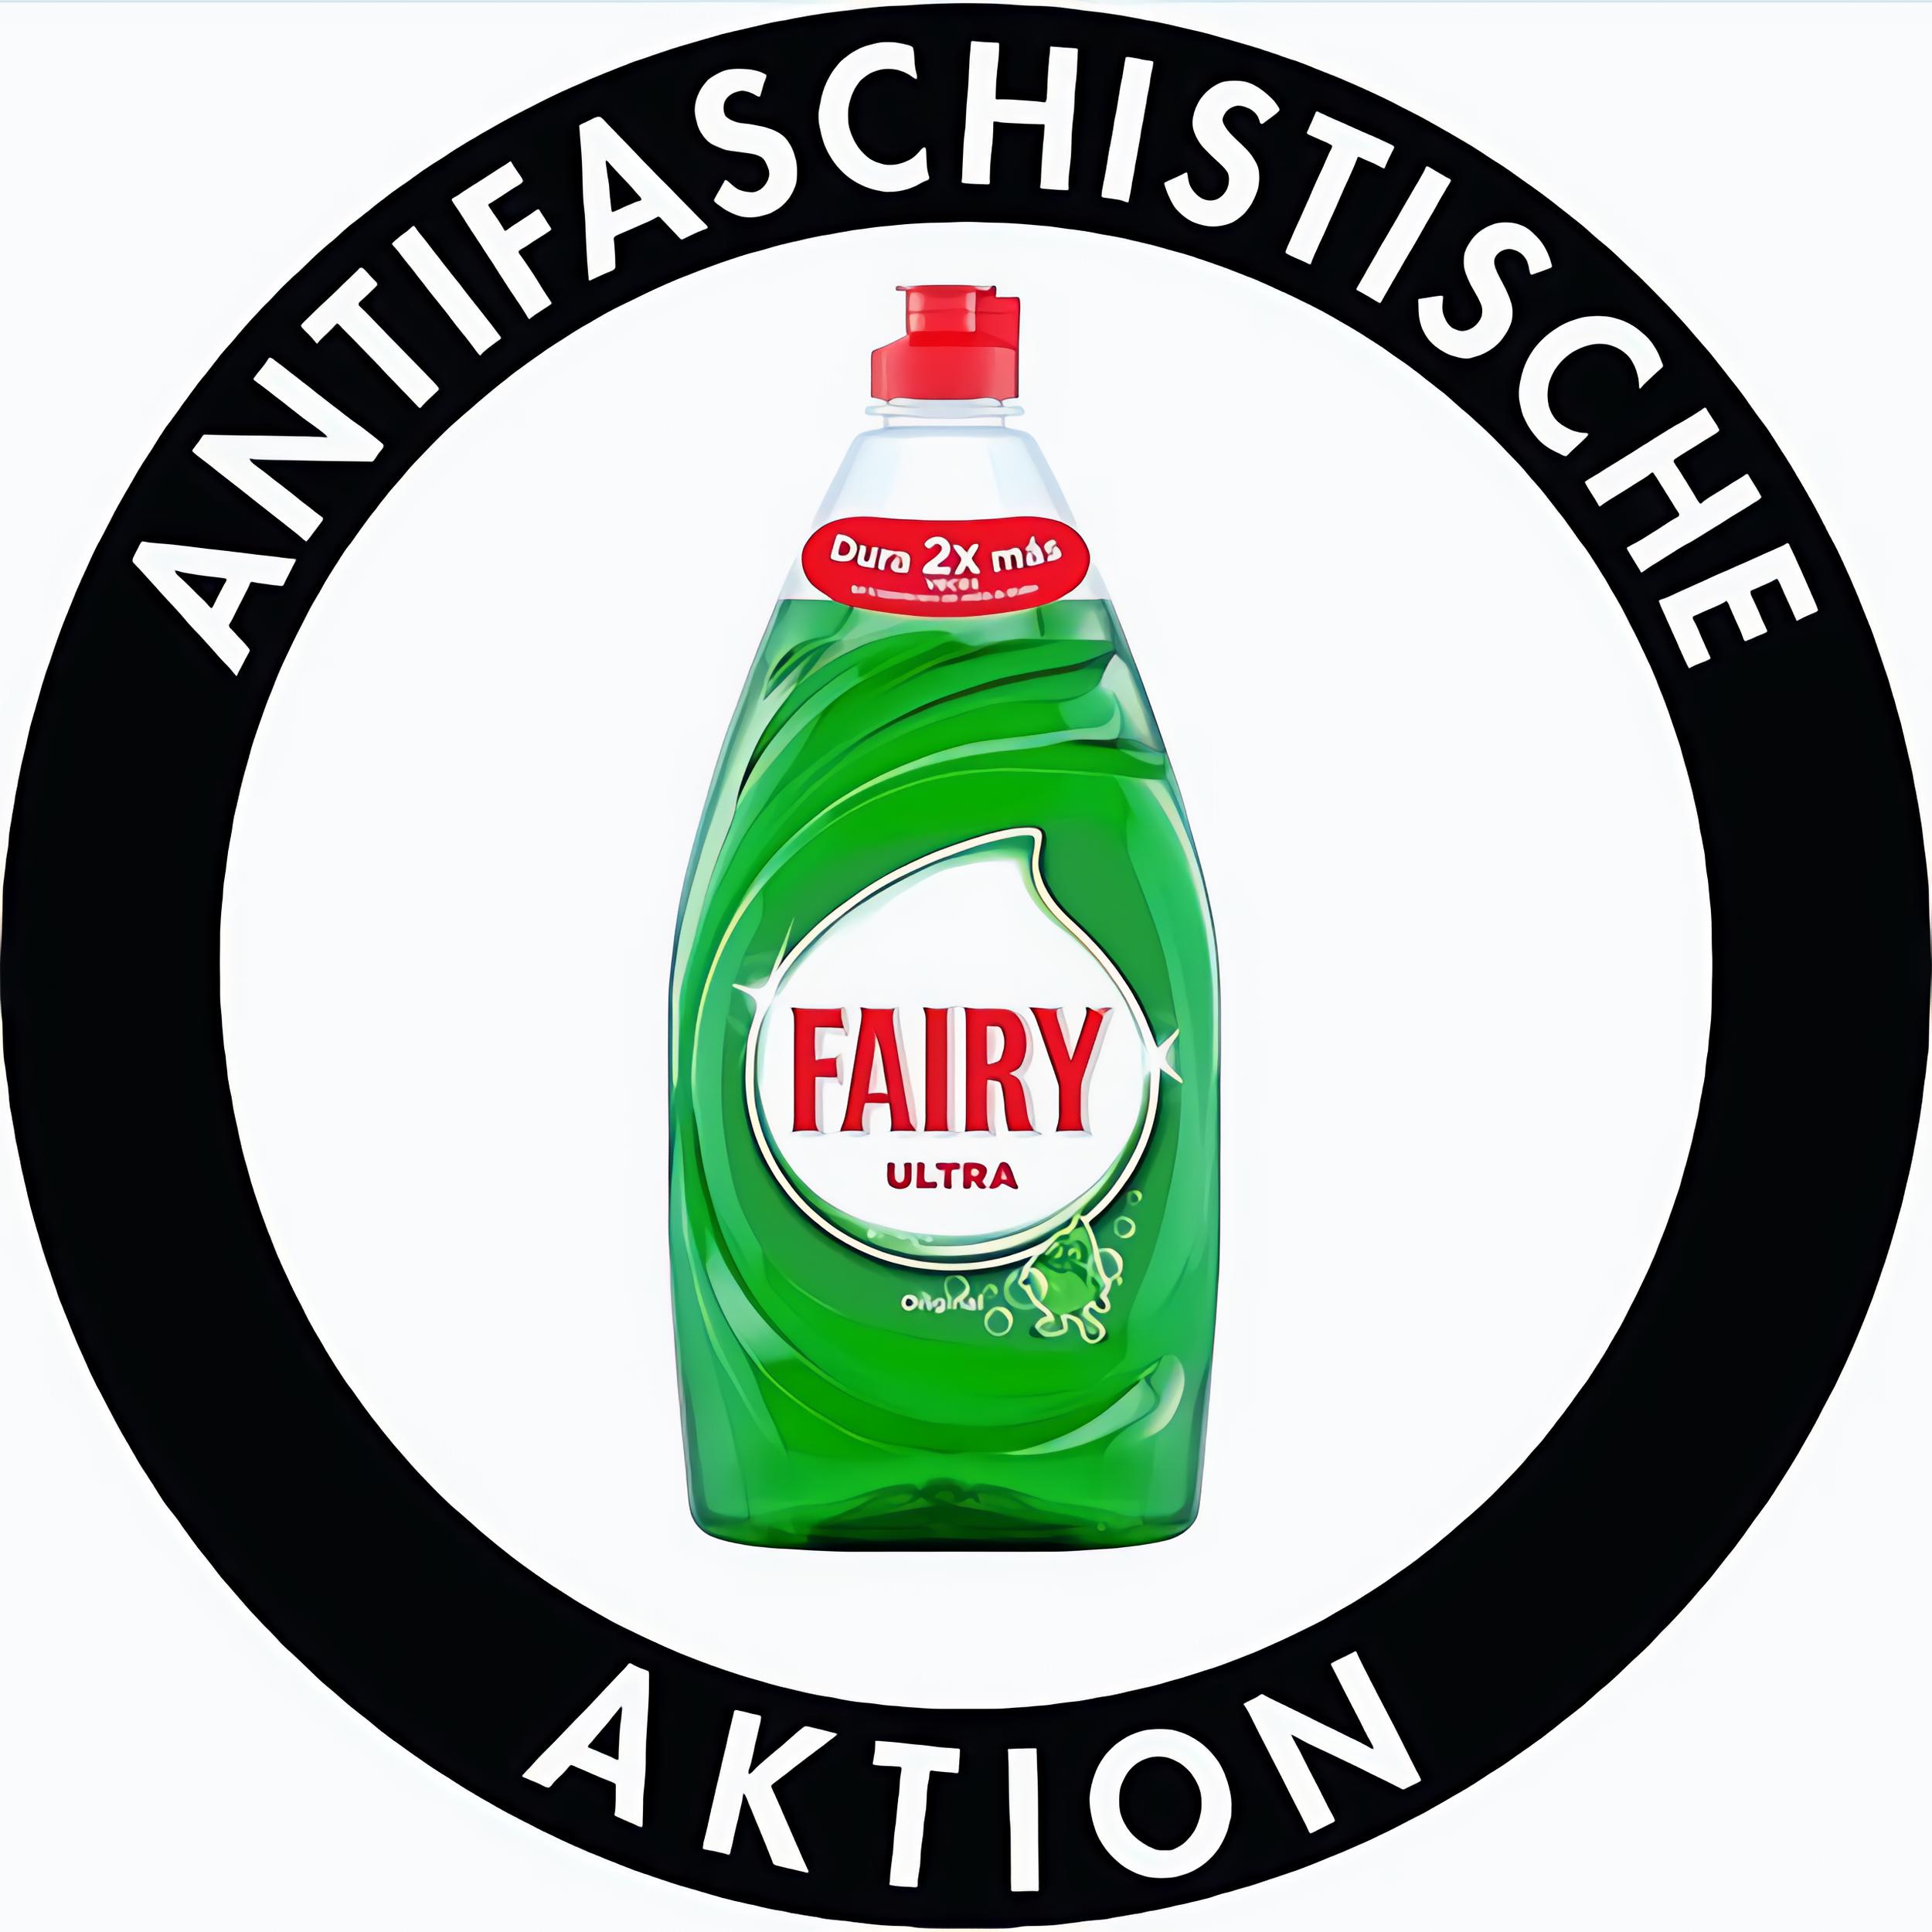 Antifaschistische aktion